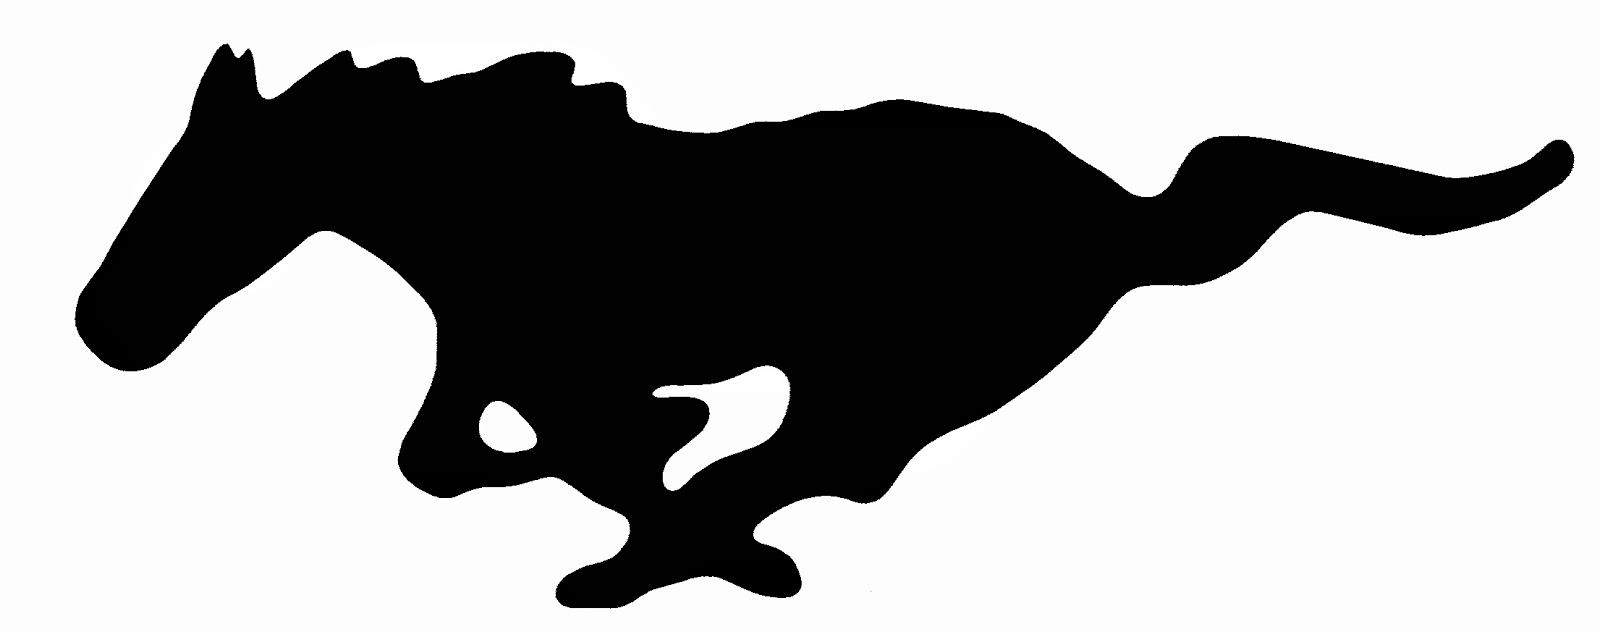 Ford mustang cobra logo vector #2